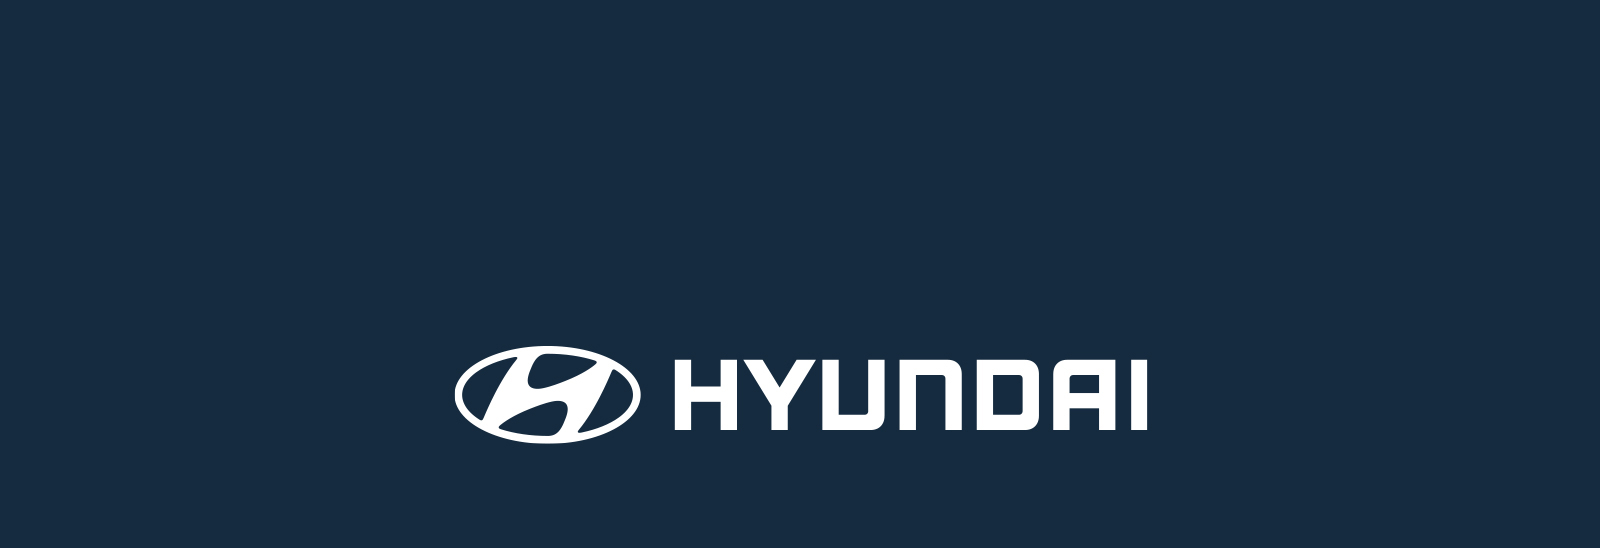 Logo Hyundai sobre fondo azul